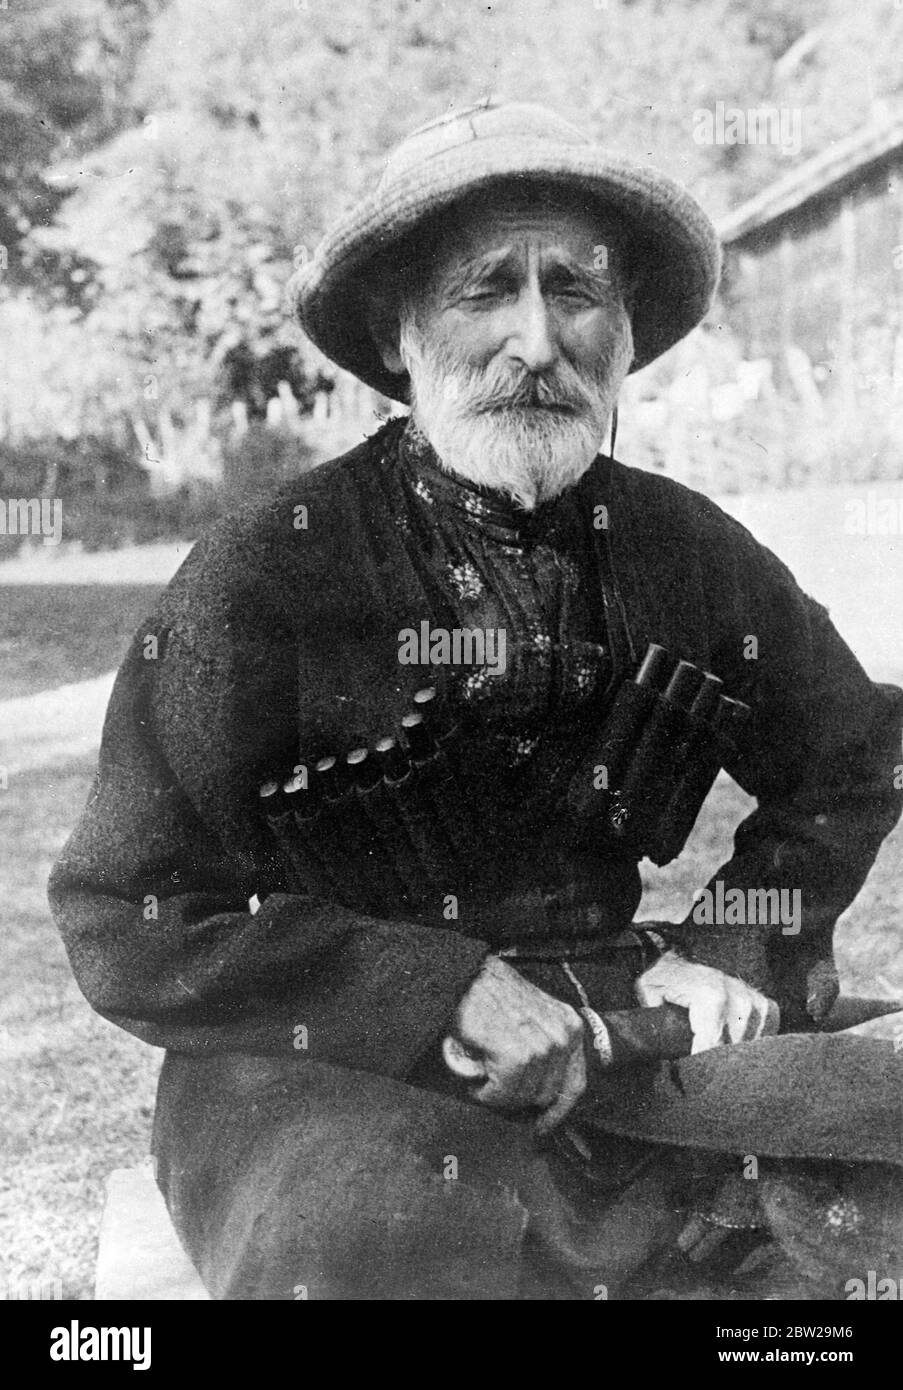 162 Jahre alt, und kann es beweisen!. Bazala Lolia, der in den Bergen von Abchasien (Georgische Sowjetrepublik) lebt, ist 162 Jahre alt und kann es beweisen. Er hat einen Pass, der sein Geburtsdatum als 1775. Bazzala, der wahrscheinlich der älteste Mann der Welt ist, stammt aus einem Bezirk, der für die Anzahl seiner Hundertjährigen bekannt ist. 17. November 1937 Stockfoto